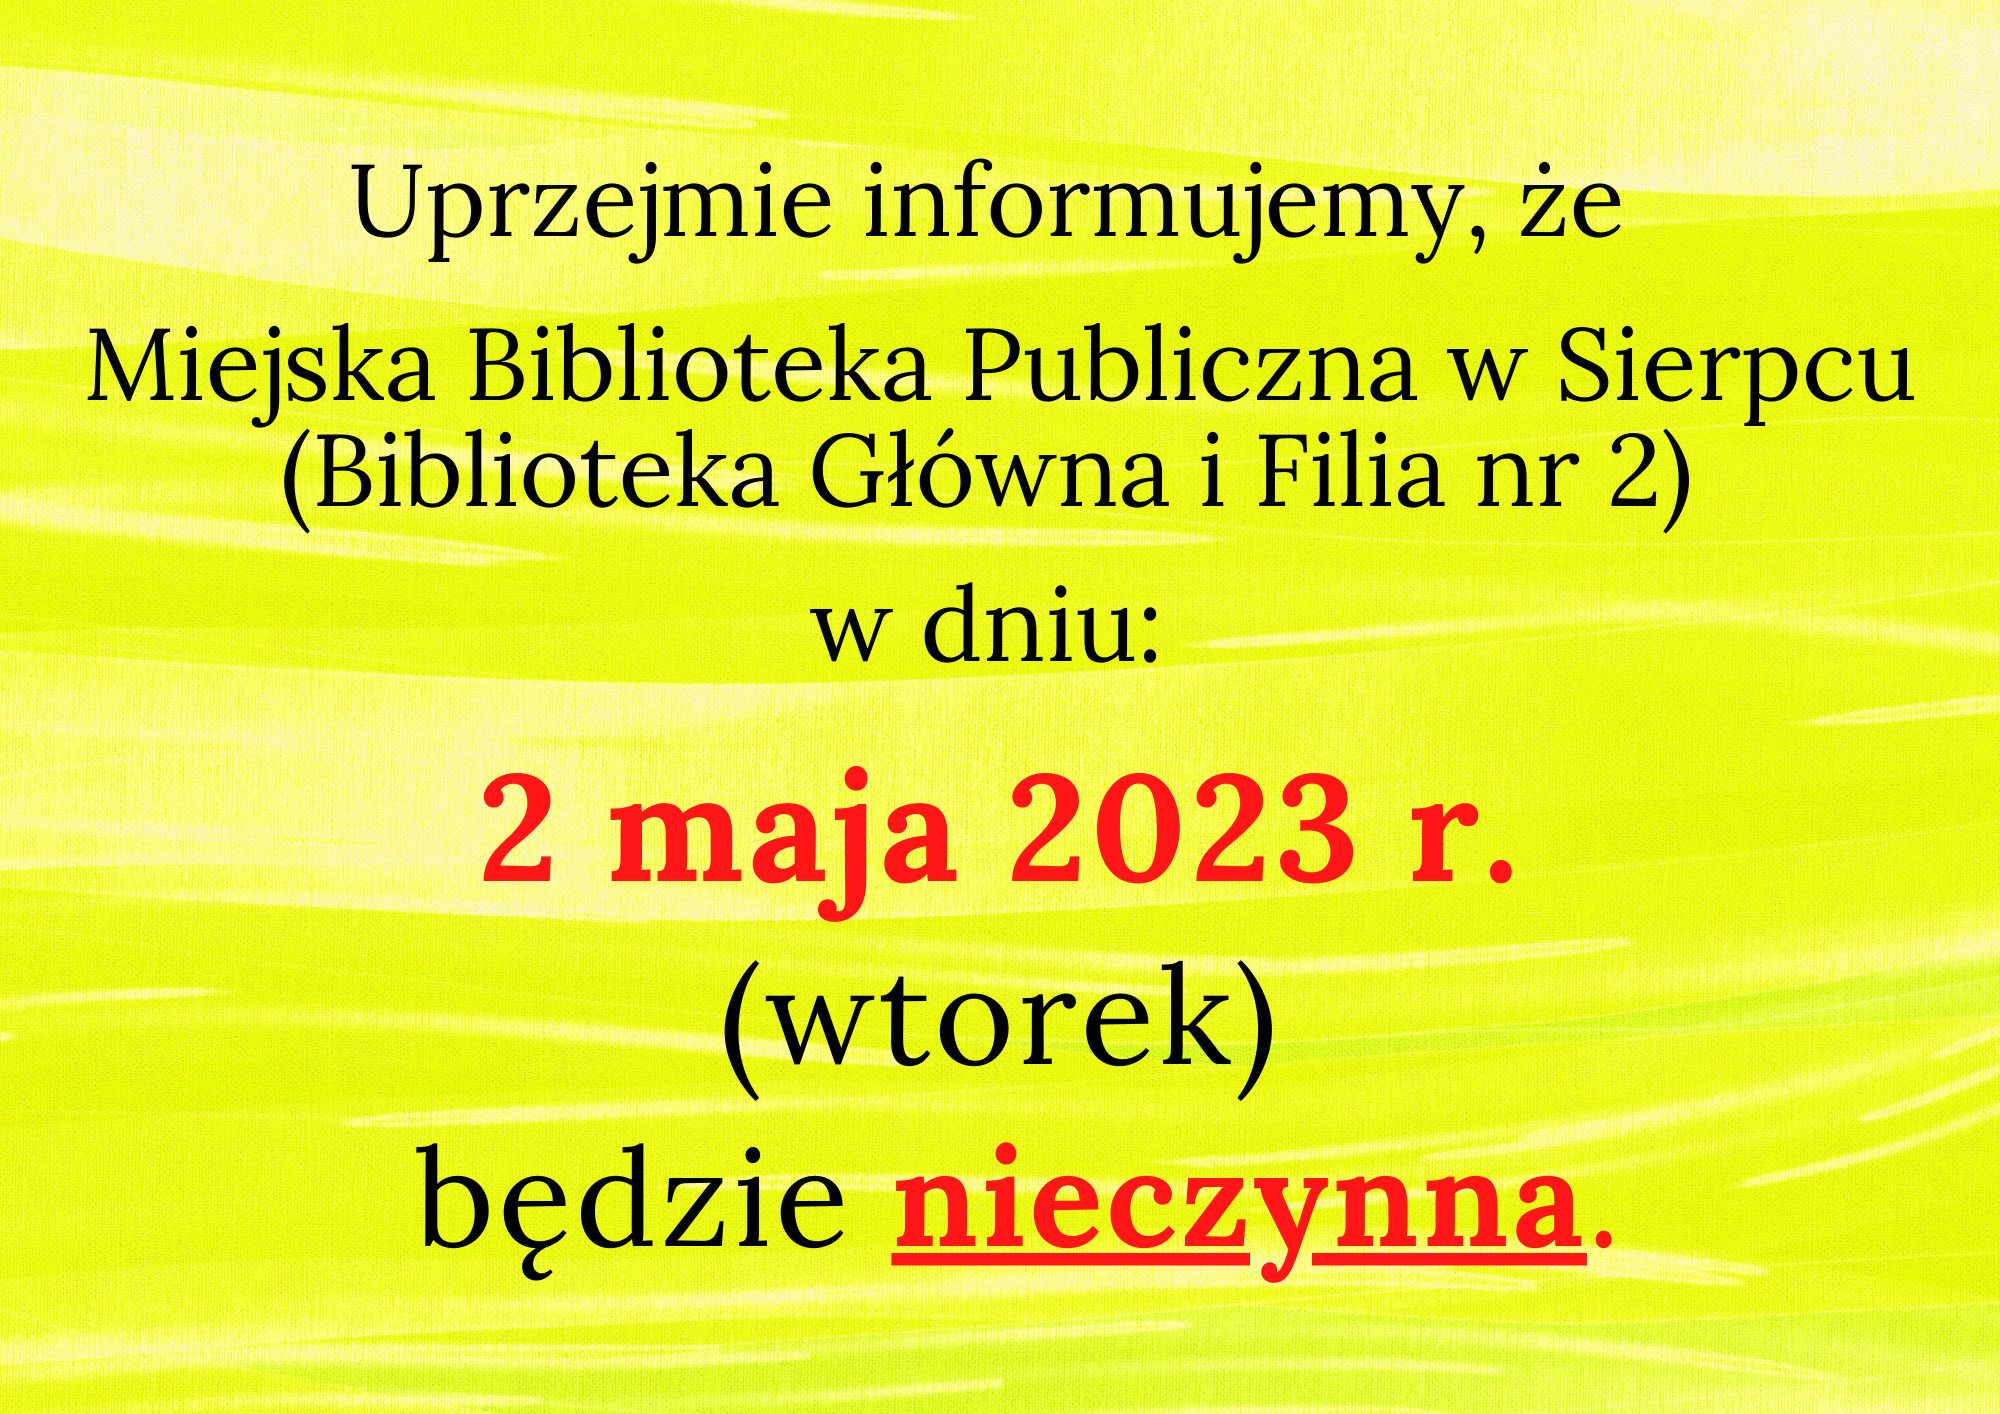 2 maja 2023 Miejska Biblioteka Publiczna im. Zofii Nałkowskiej w Sierpcu będzie nieczynna.